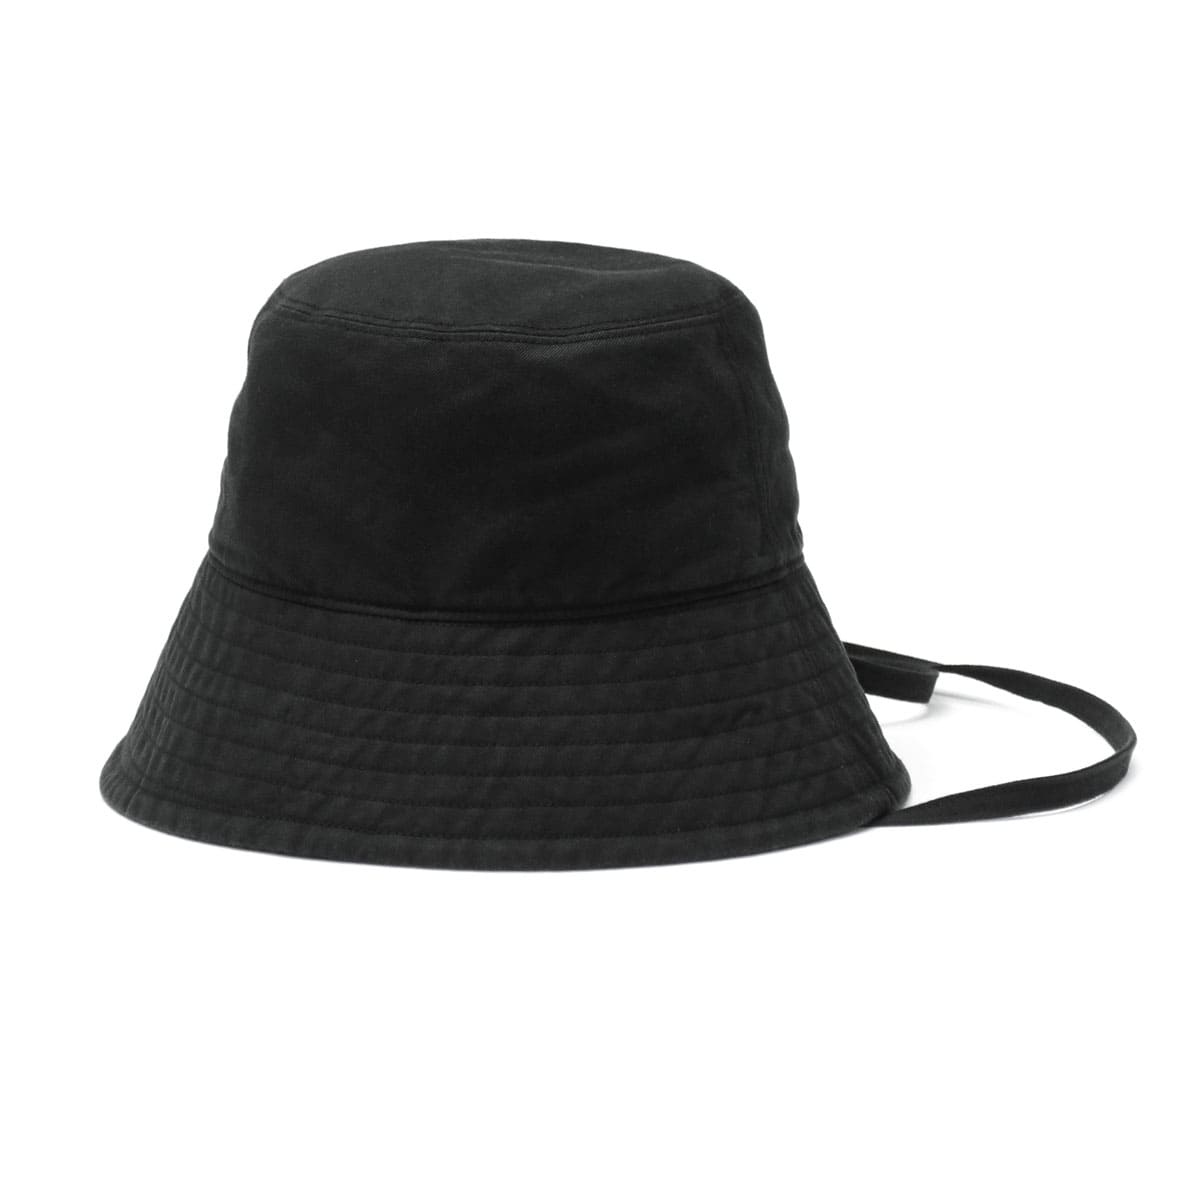 ORCIVALコットンリネン バケットハット - 帽子